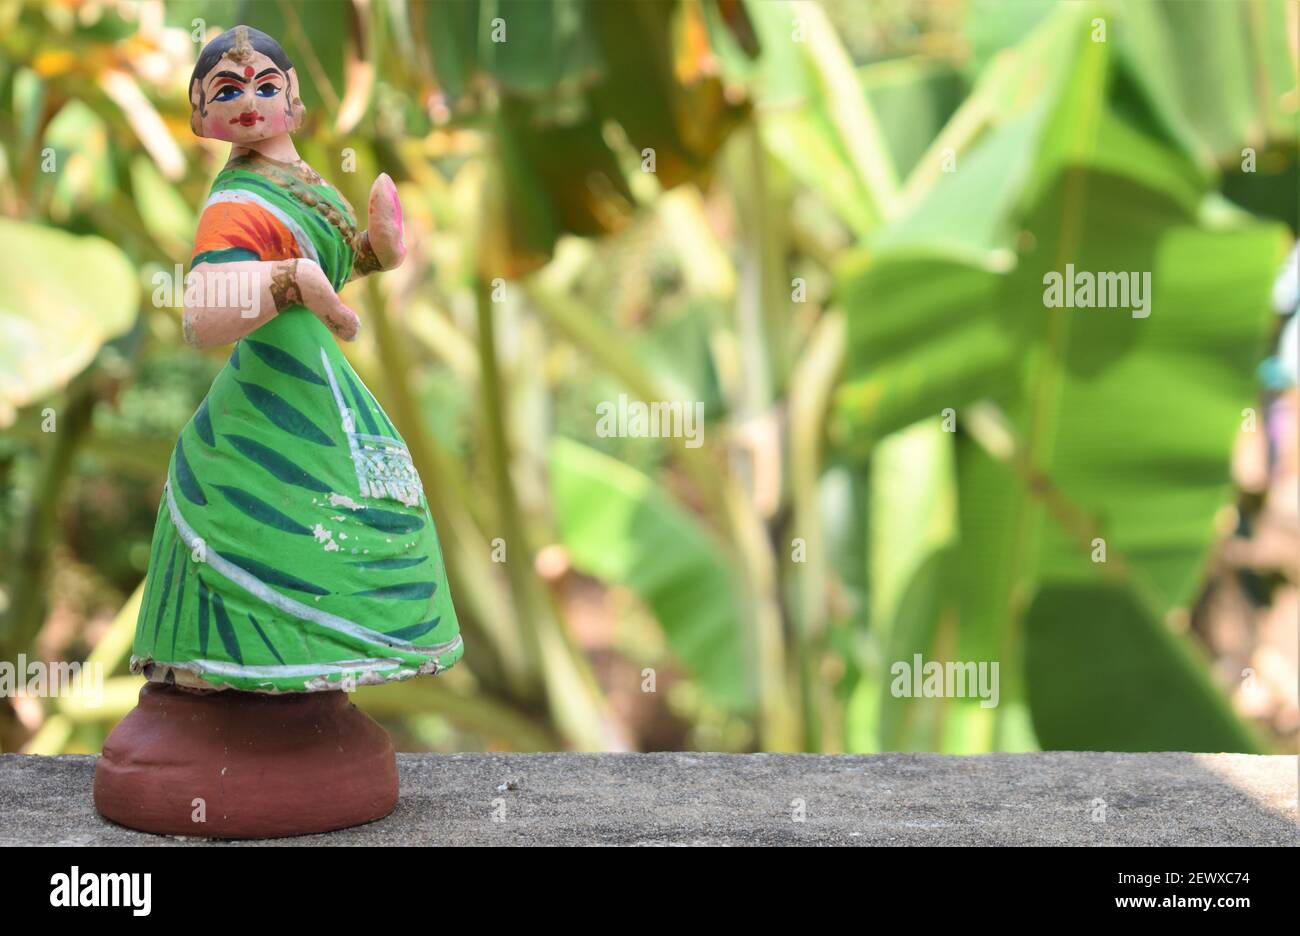 Thanjavur tanzende Puppe in Tamilnadu. Indisches Spielzeug und  traditionelle Kleidung und Ornamente in einem natürlichen Hintergrund  Stockfotografie - Alamy